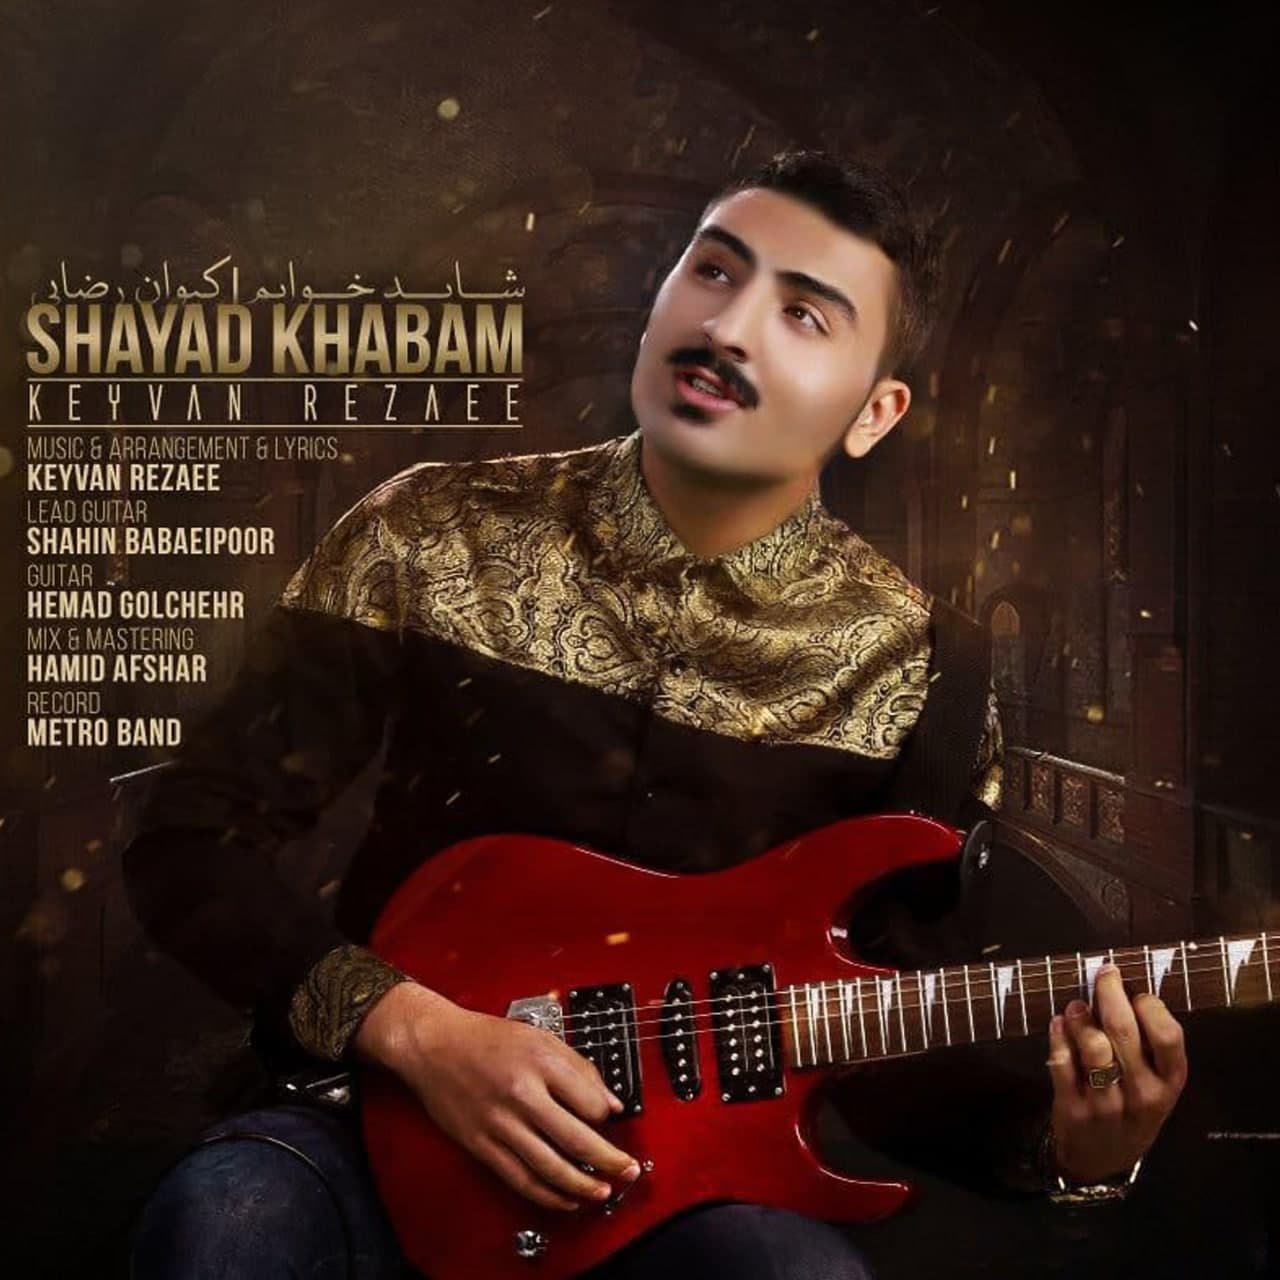  دانلود آهنگ جدید کیوان رضایی - شاید خوابم | Download New Music By Keyvan Rezaei - Shayad Khabam